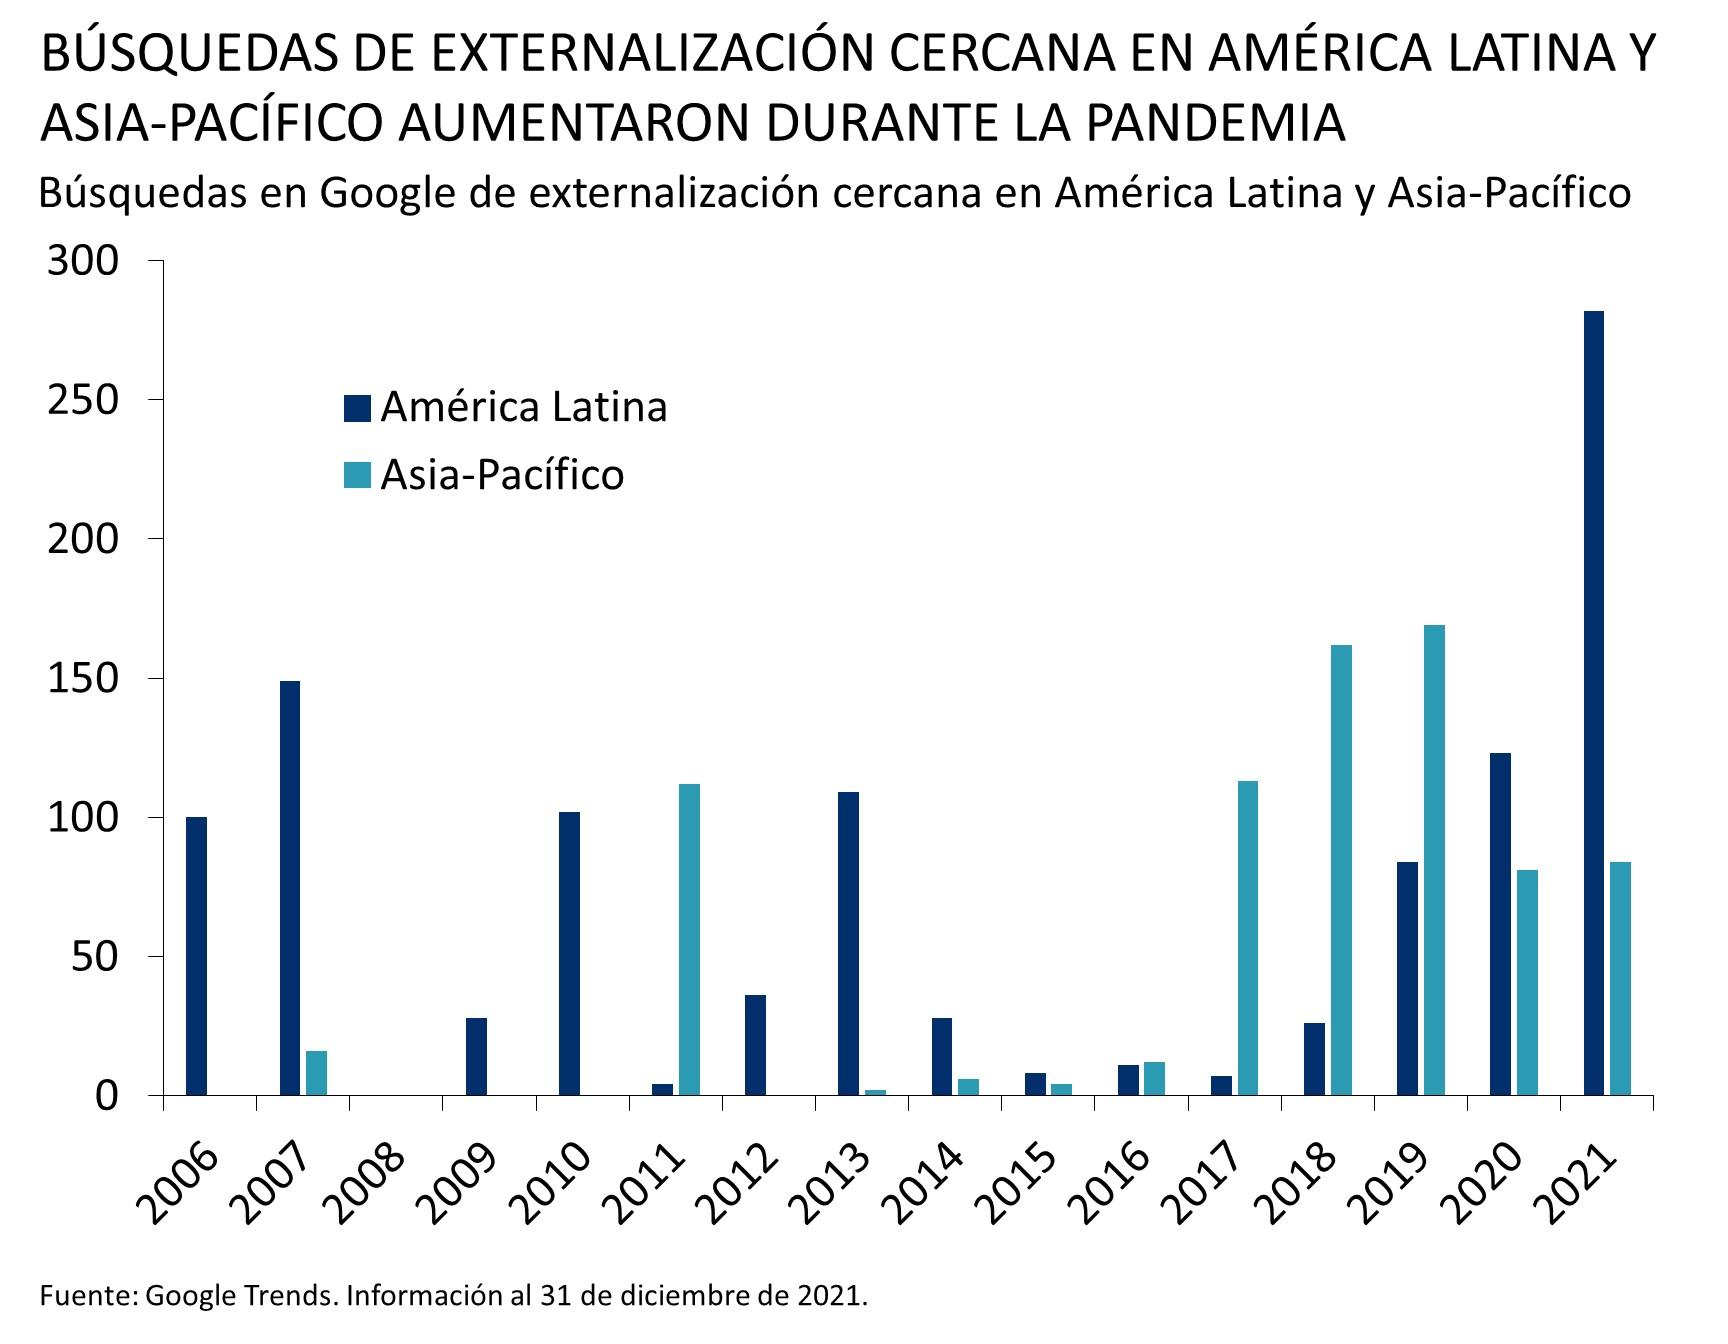 Este gráfico muestra las búsquedas de externalización cercana en América Latina y Asia-Pacífico en Google, entre 2006 y 2021. Entre 2006 y 2017, las búsquedas fueron escasas, pero aumentaron a partir de 2017. En 2021, América Latina tenía 282 y Asia-Pacífico 84.